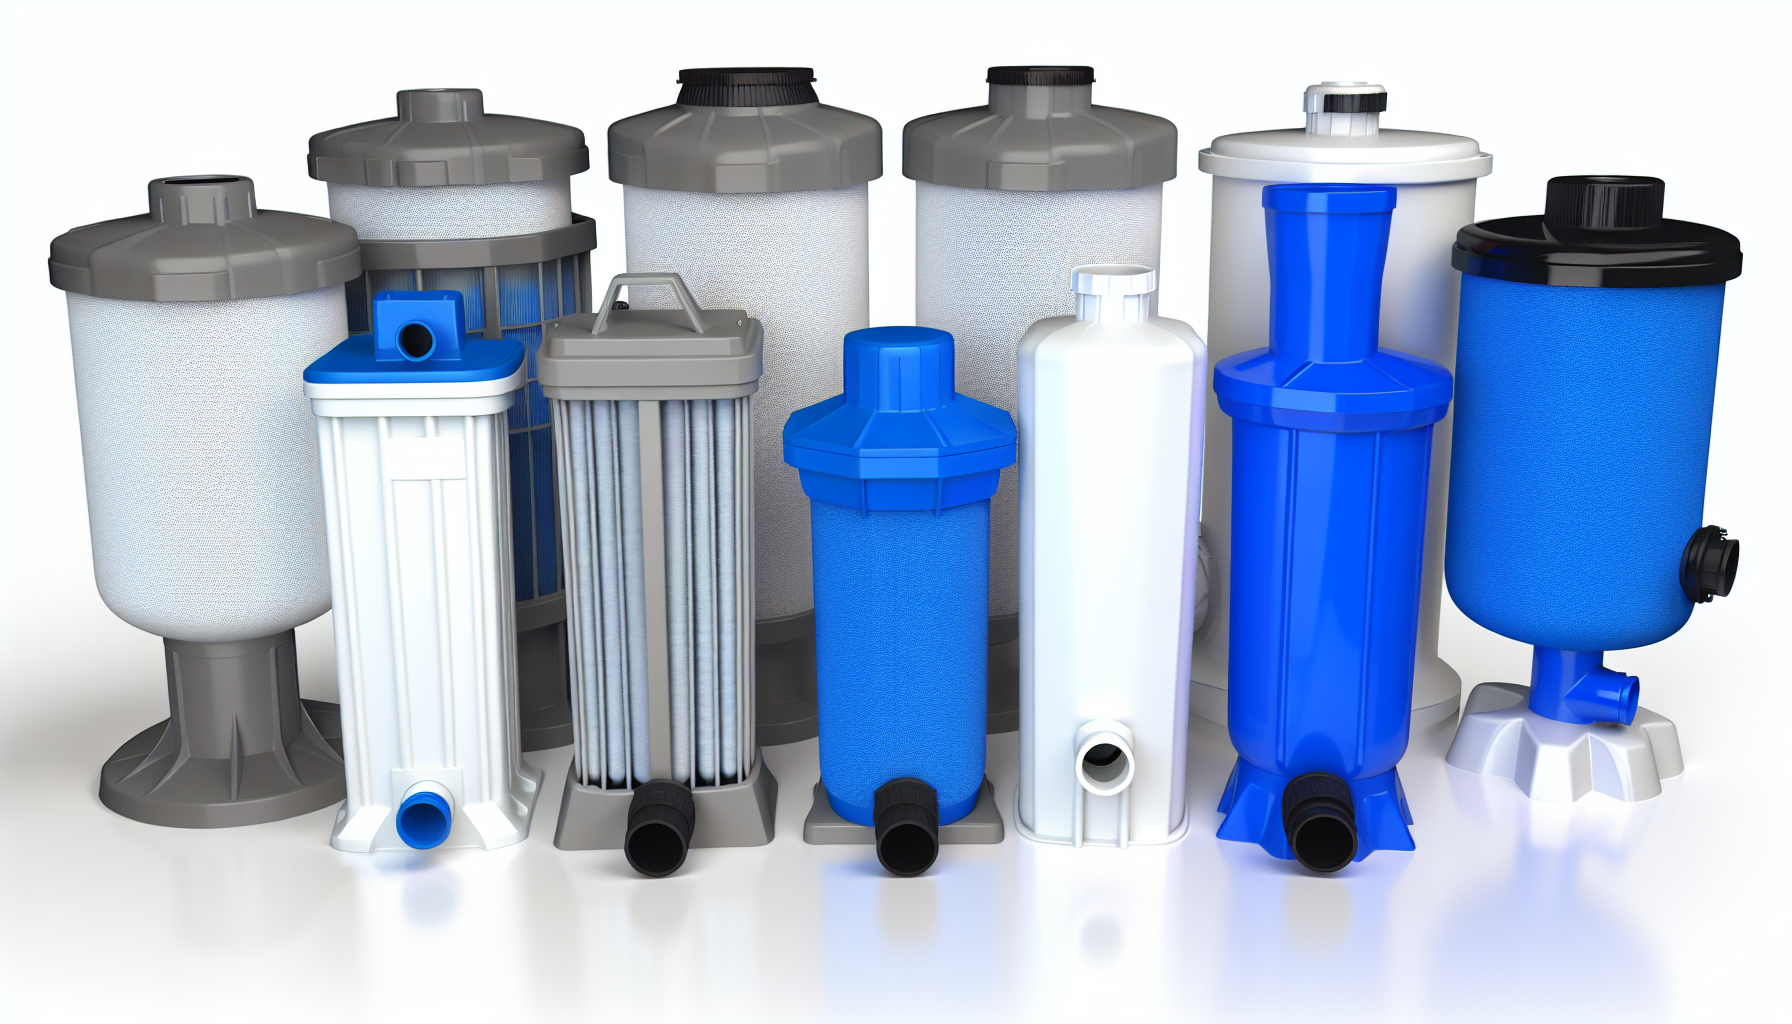 Verschiedene Modelle von Wasserfiltergehäusen mit unterschiedlichen Designs und Farben zur Wasseraufbereitung.